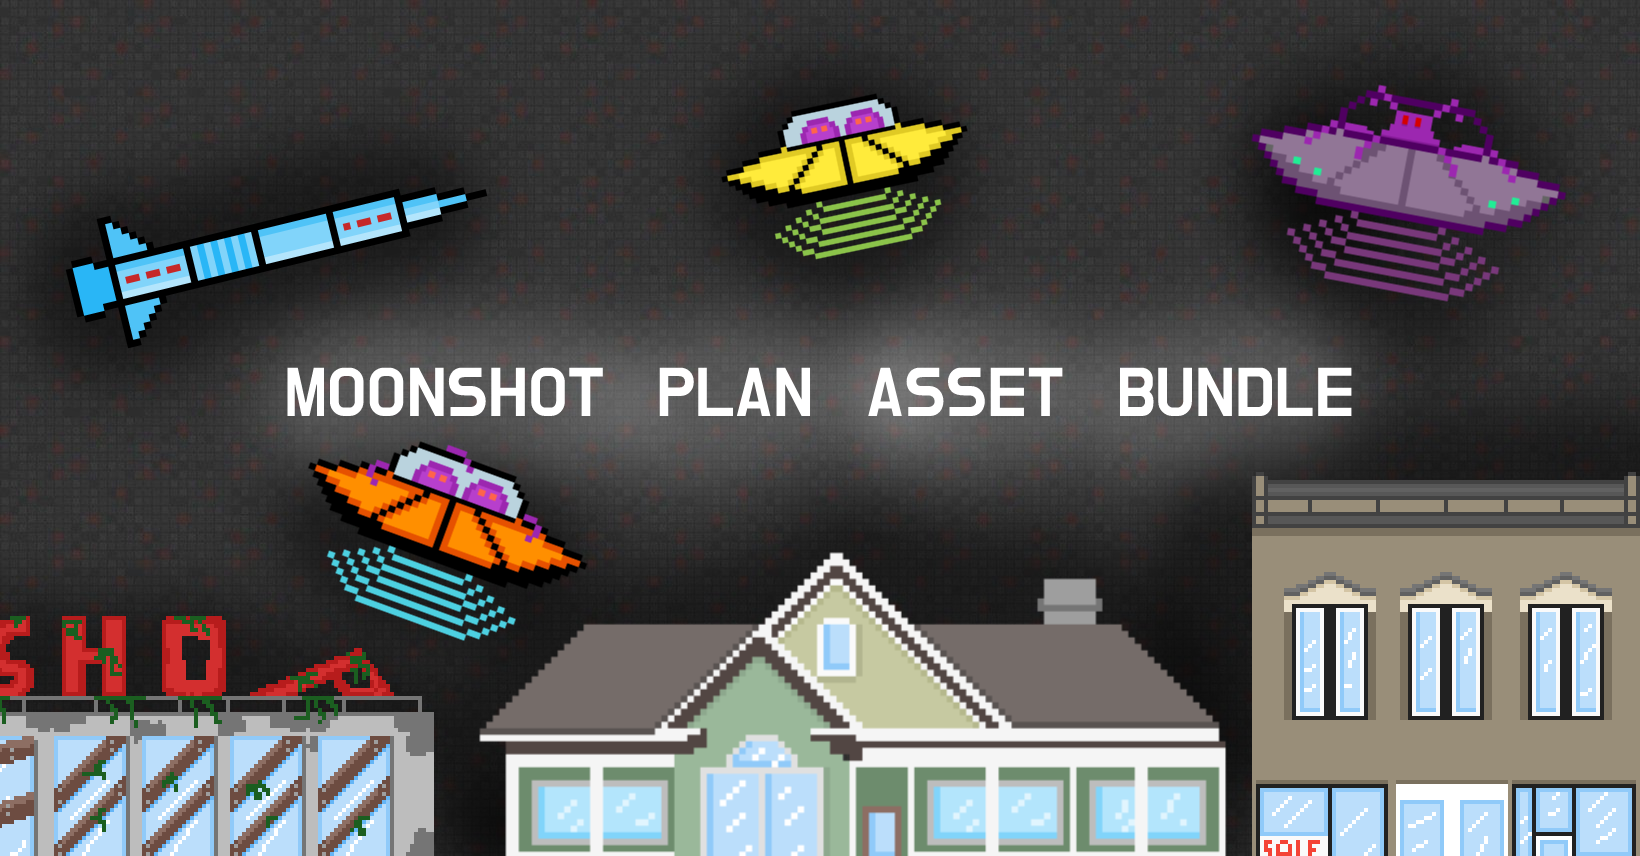 Moonshot plan asset bundle